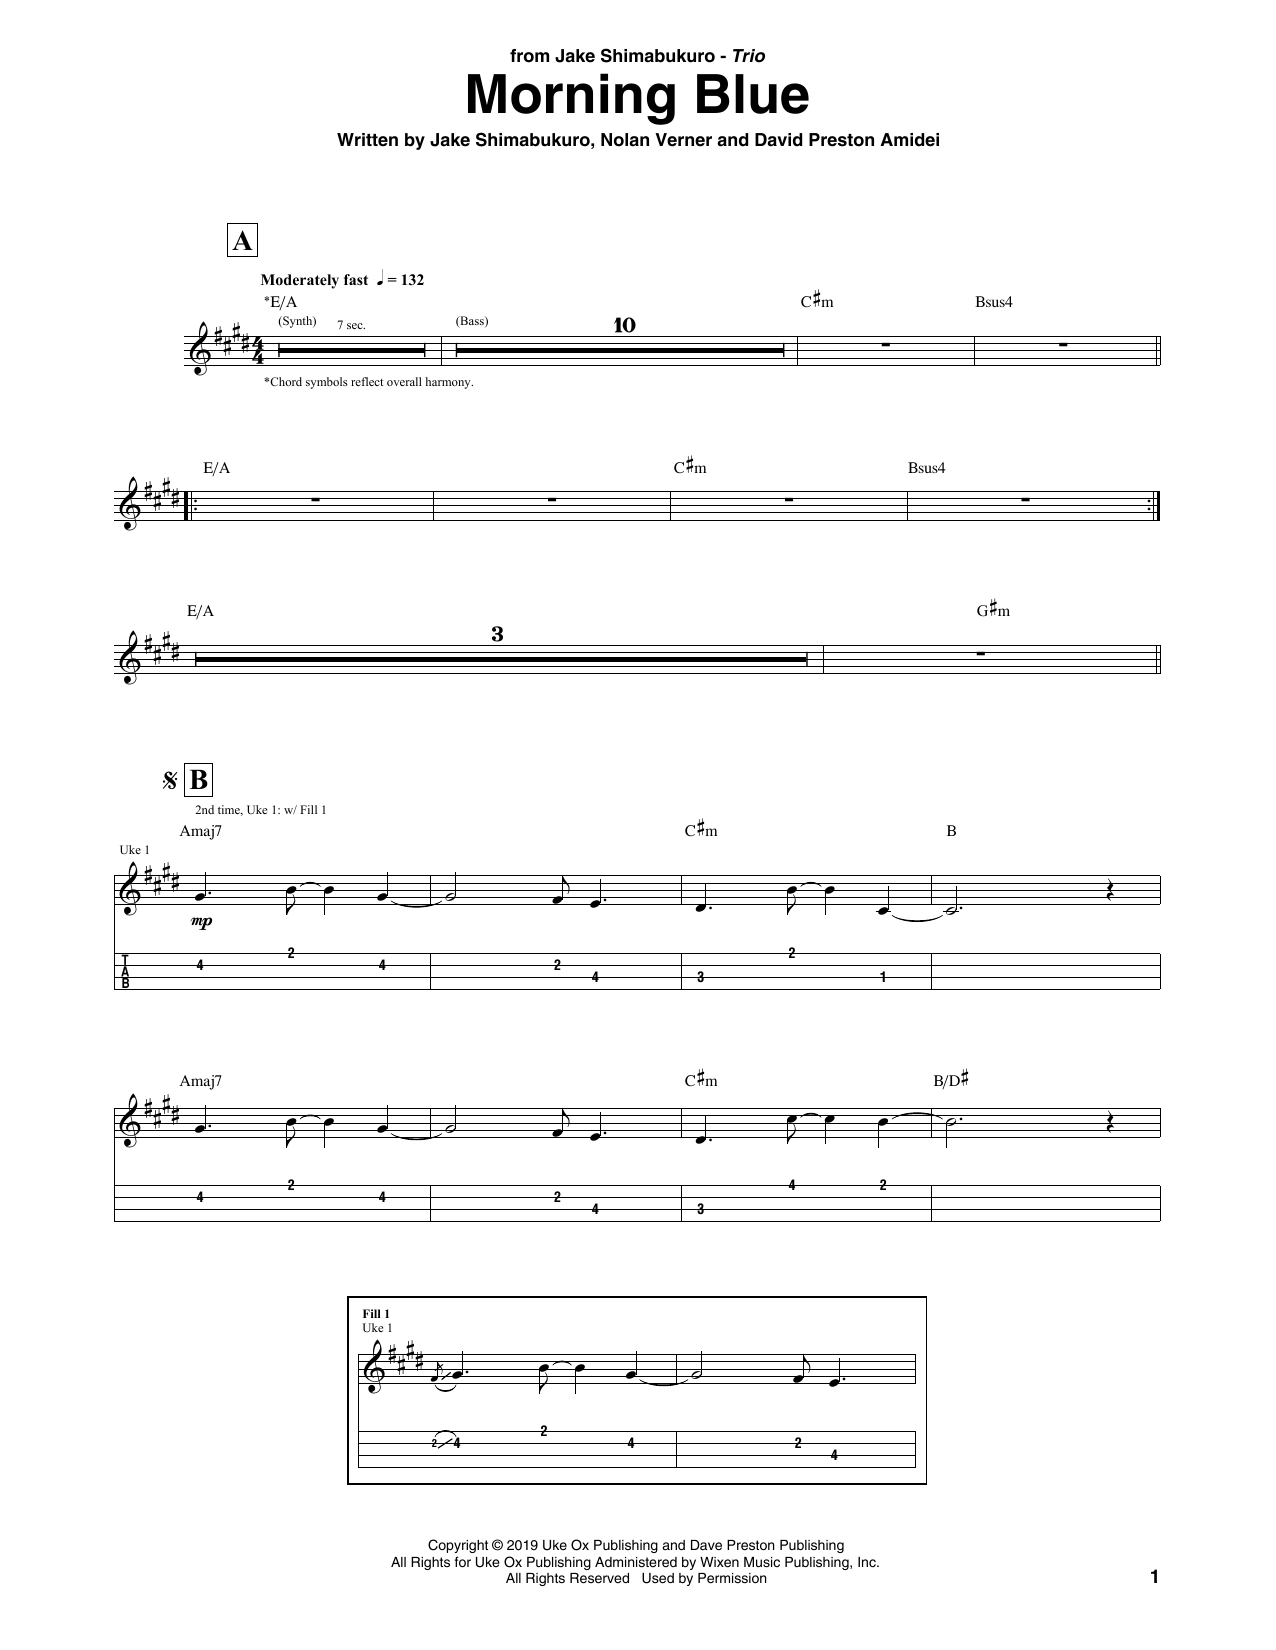 Jake Shimabukuro Trio Morning Blue Sheet Music Notes & Chords for Ukulele Tab - Download or Print PDF